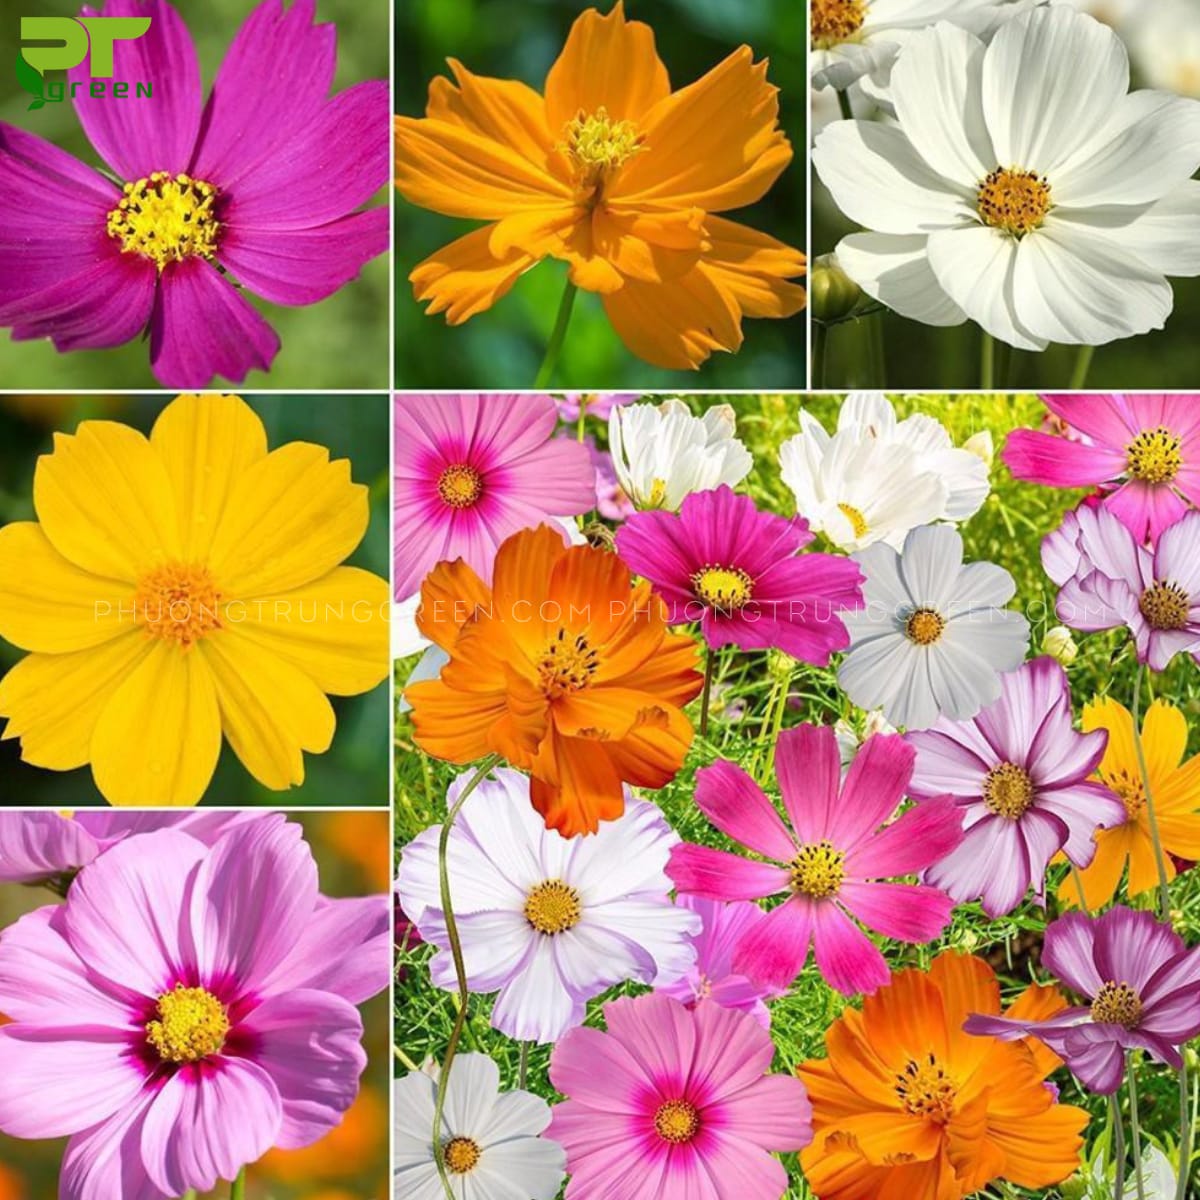 Hoa sao nhái có màu sắc đa dạng